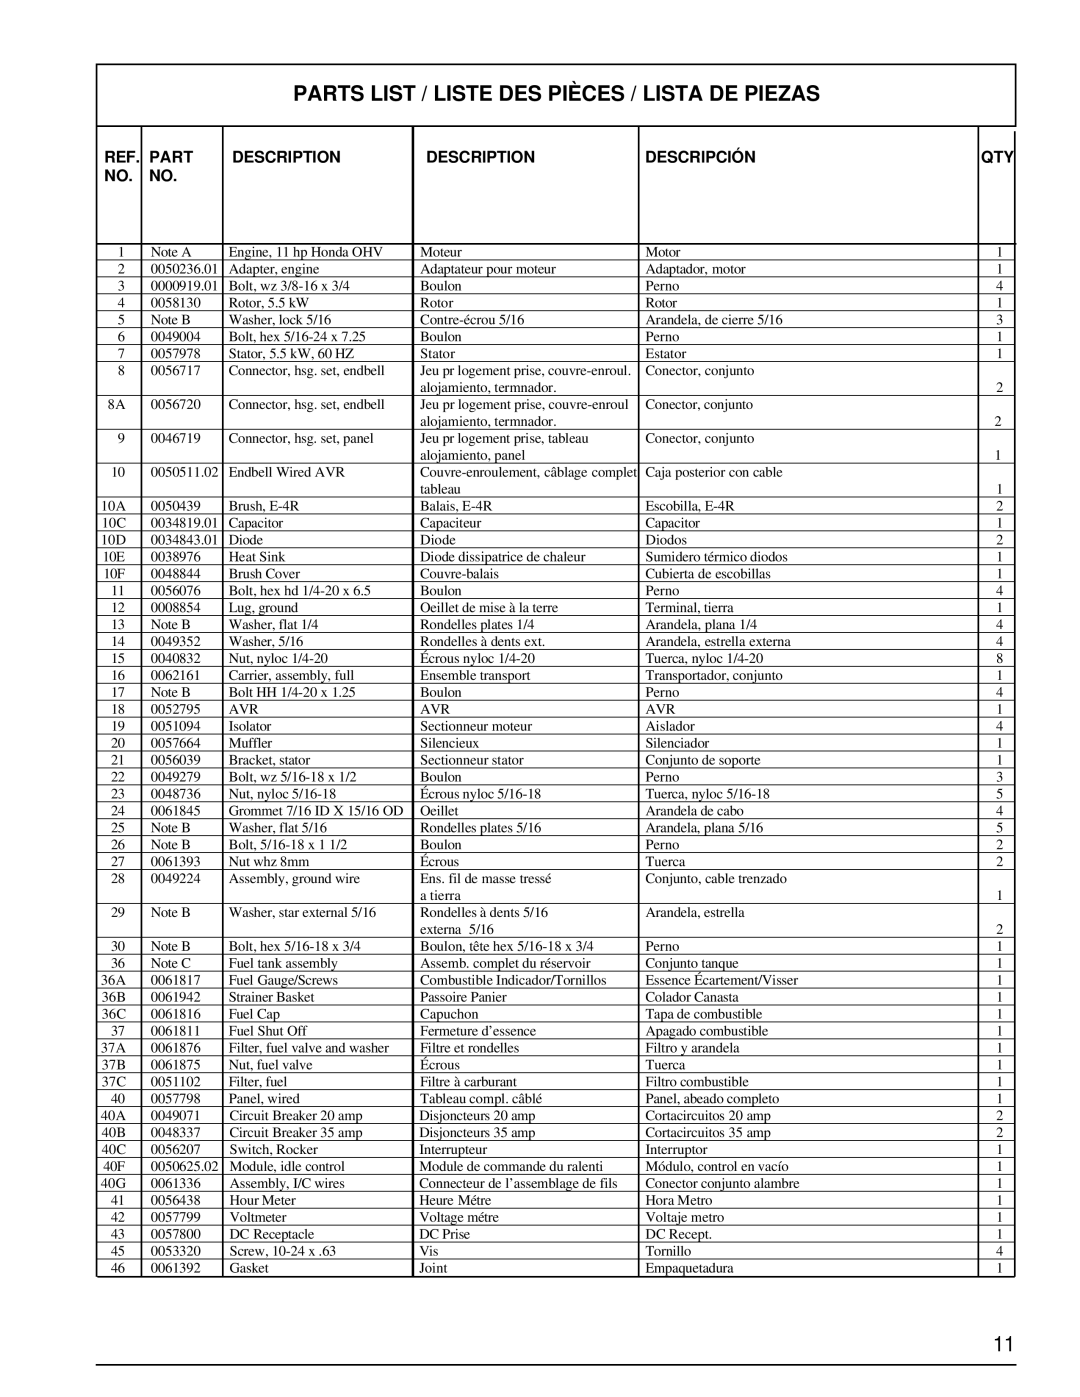 Powermate PM0495502 manual Parts List / Liste Des Pièces / Lista De Piezas, Description, Descripción 